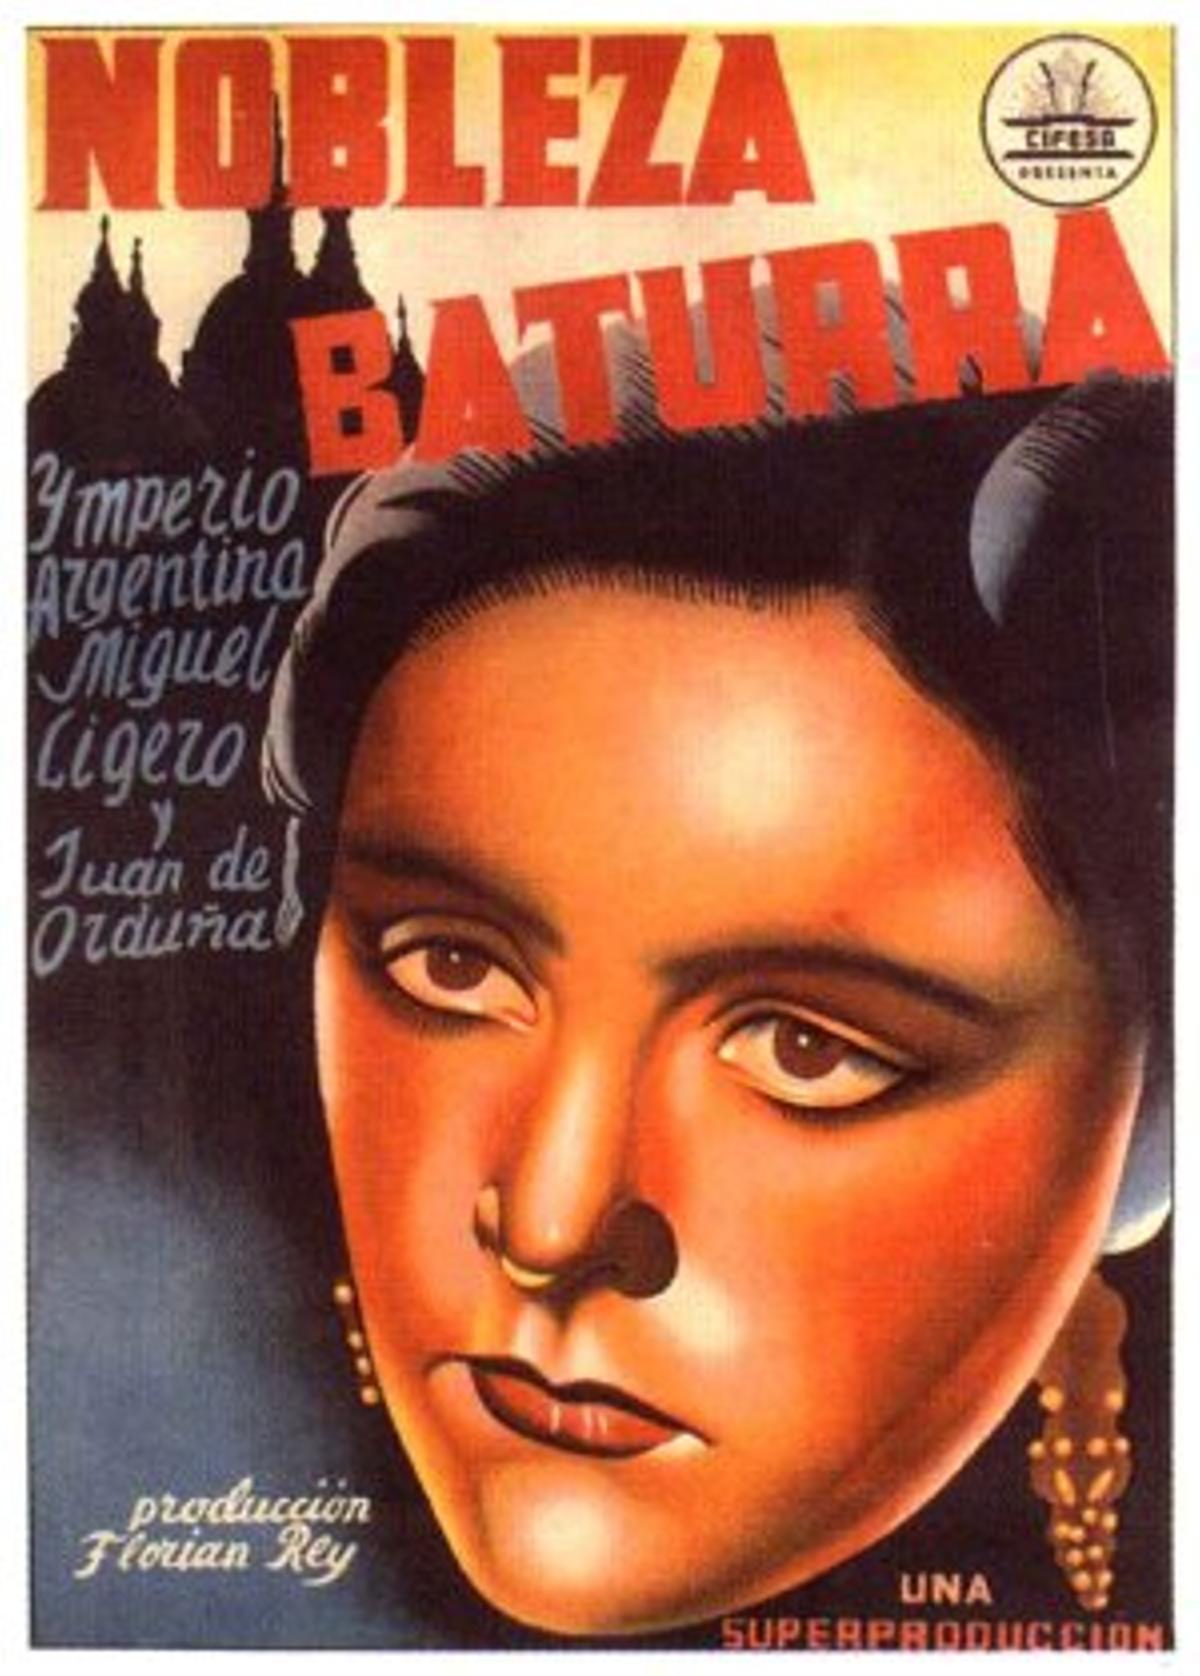 Cartel de la película ‘Nobleza baturra’, dirigida por Florián Rey y protagonizada por Imperio Argentina.